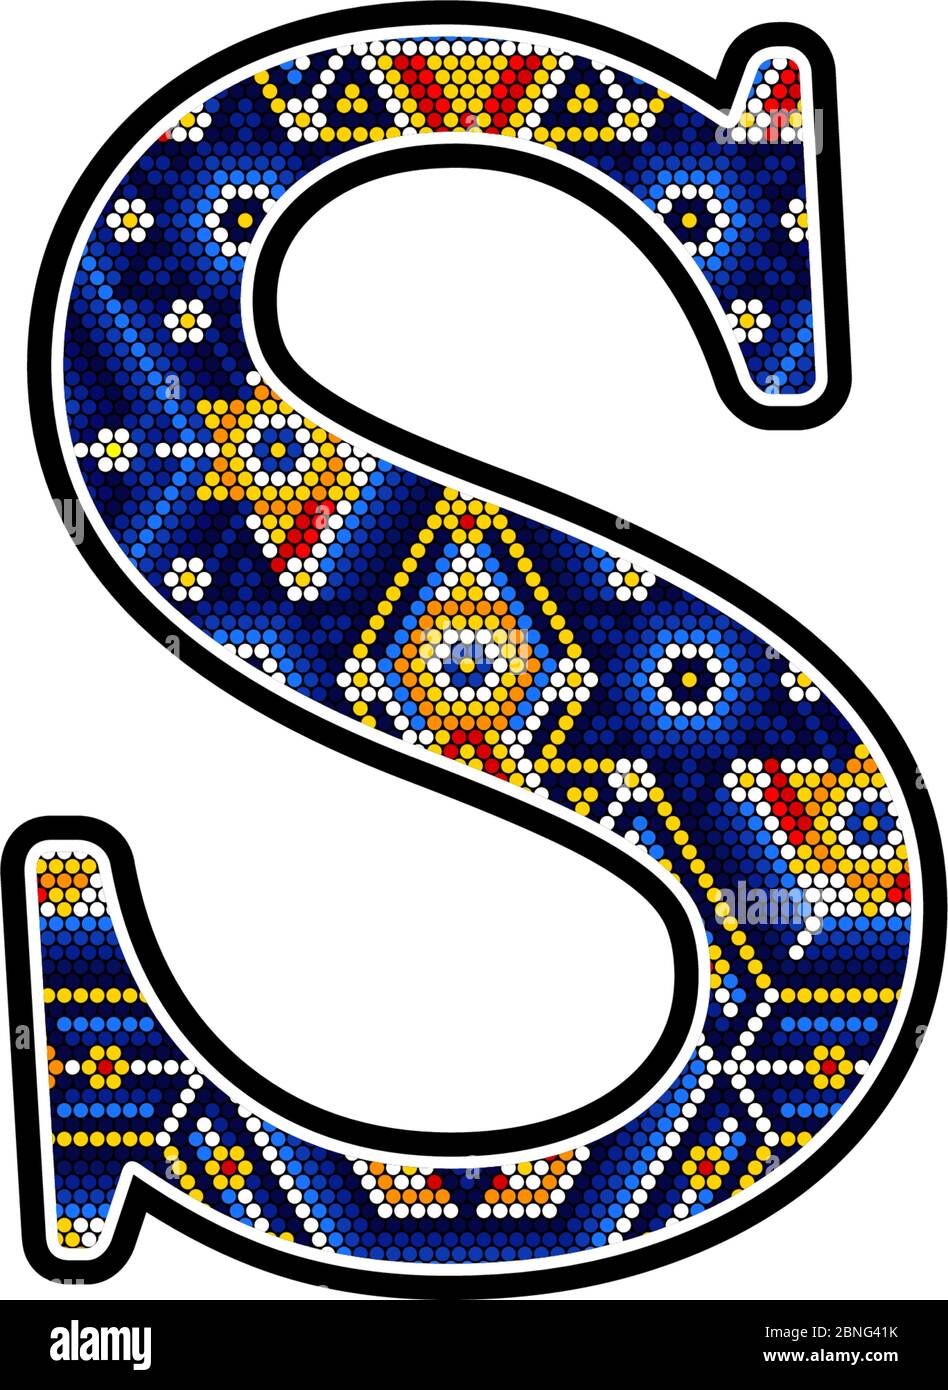 Lettera maiuscola iniziale S con punti colorati. Design astratto ispirato allo stile artigianale messicano huichol. Isolato su sfondo bianco Illustrazione Vettoriale